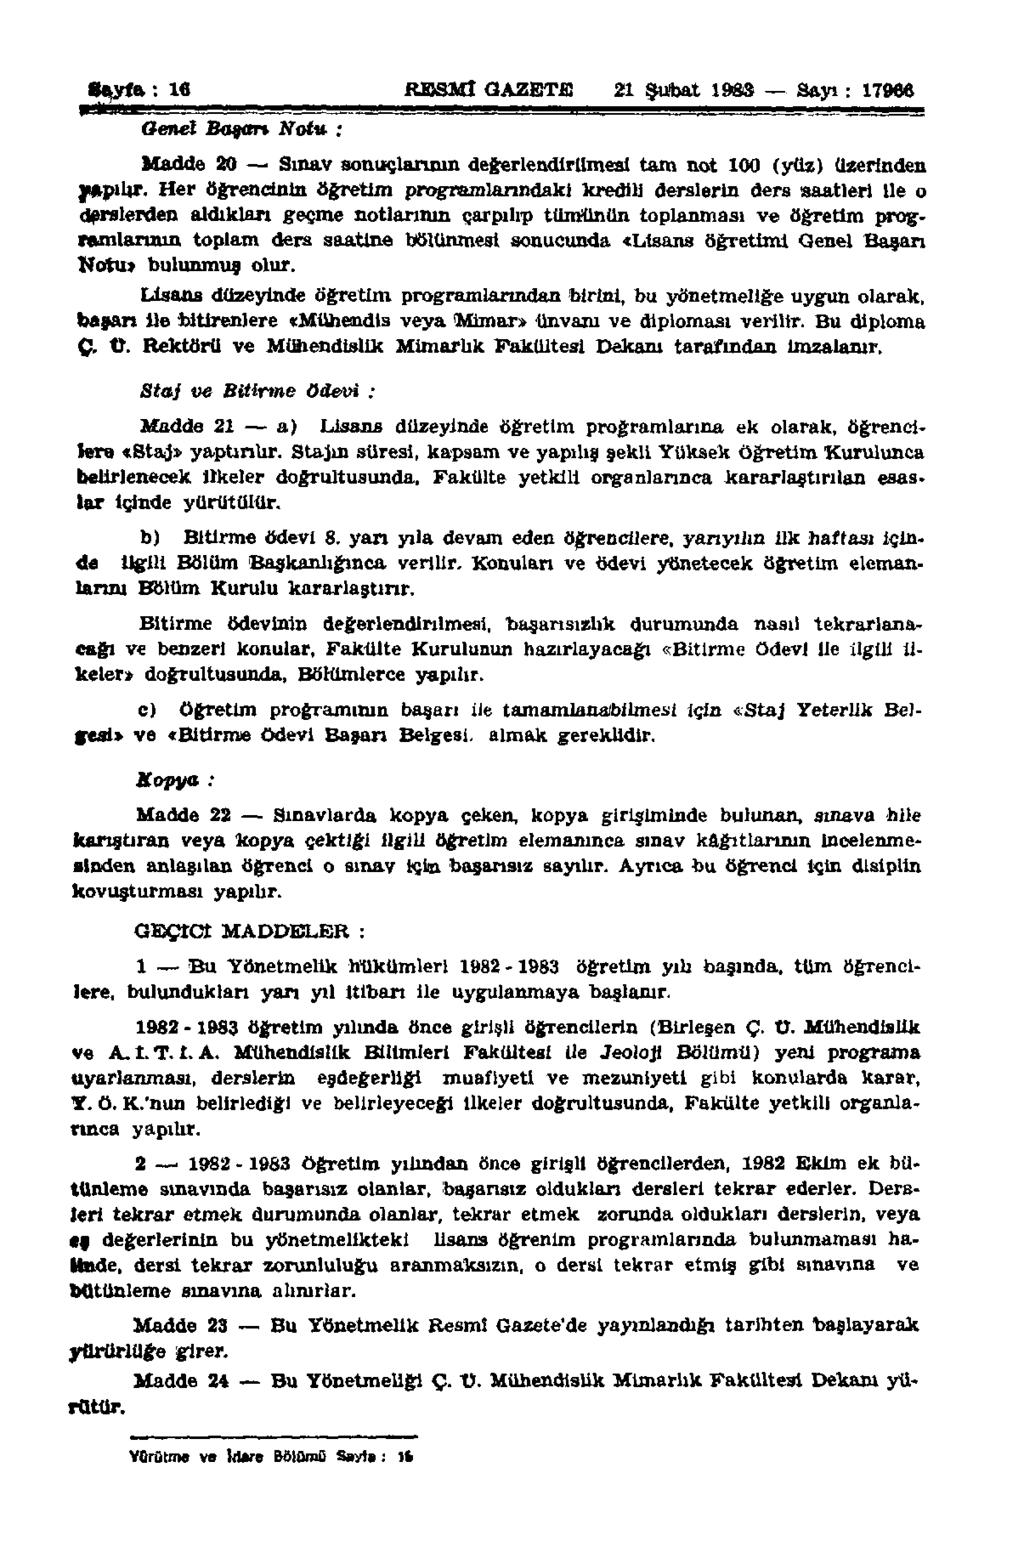 Sayfa: 16 RESMÎ GAZETE 21 Şubat 1983 Sayı: 17966 Genel Basarı Notu : Madde 20 Sınav sonuçlarının değerlendirilmesi tam not 100 (yüz) üzerinden yapılır.